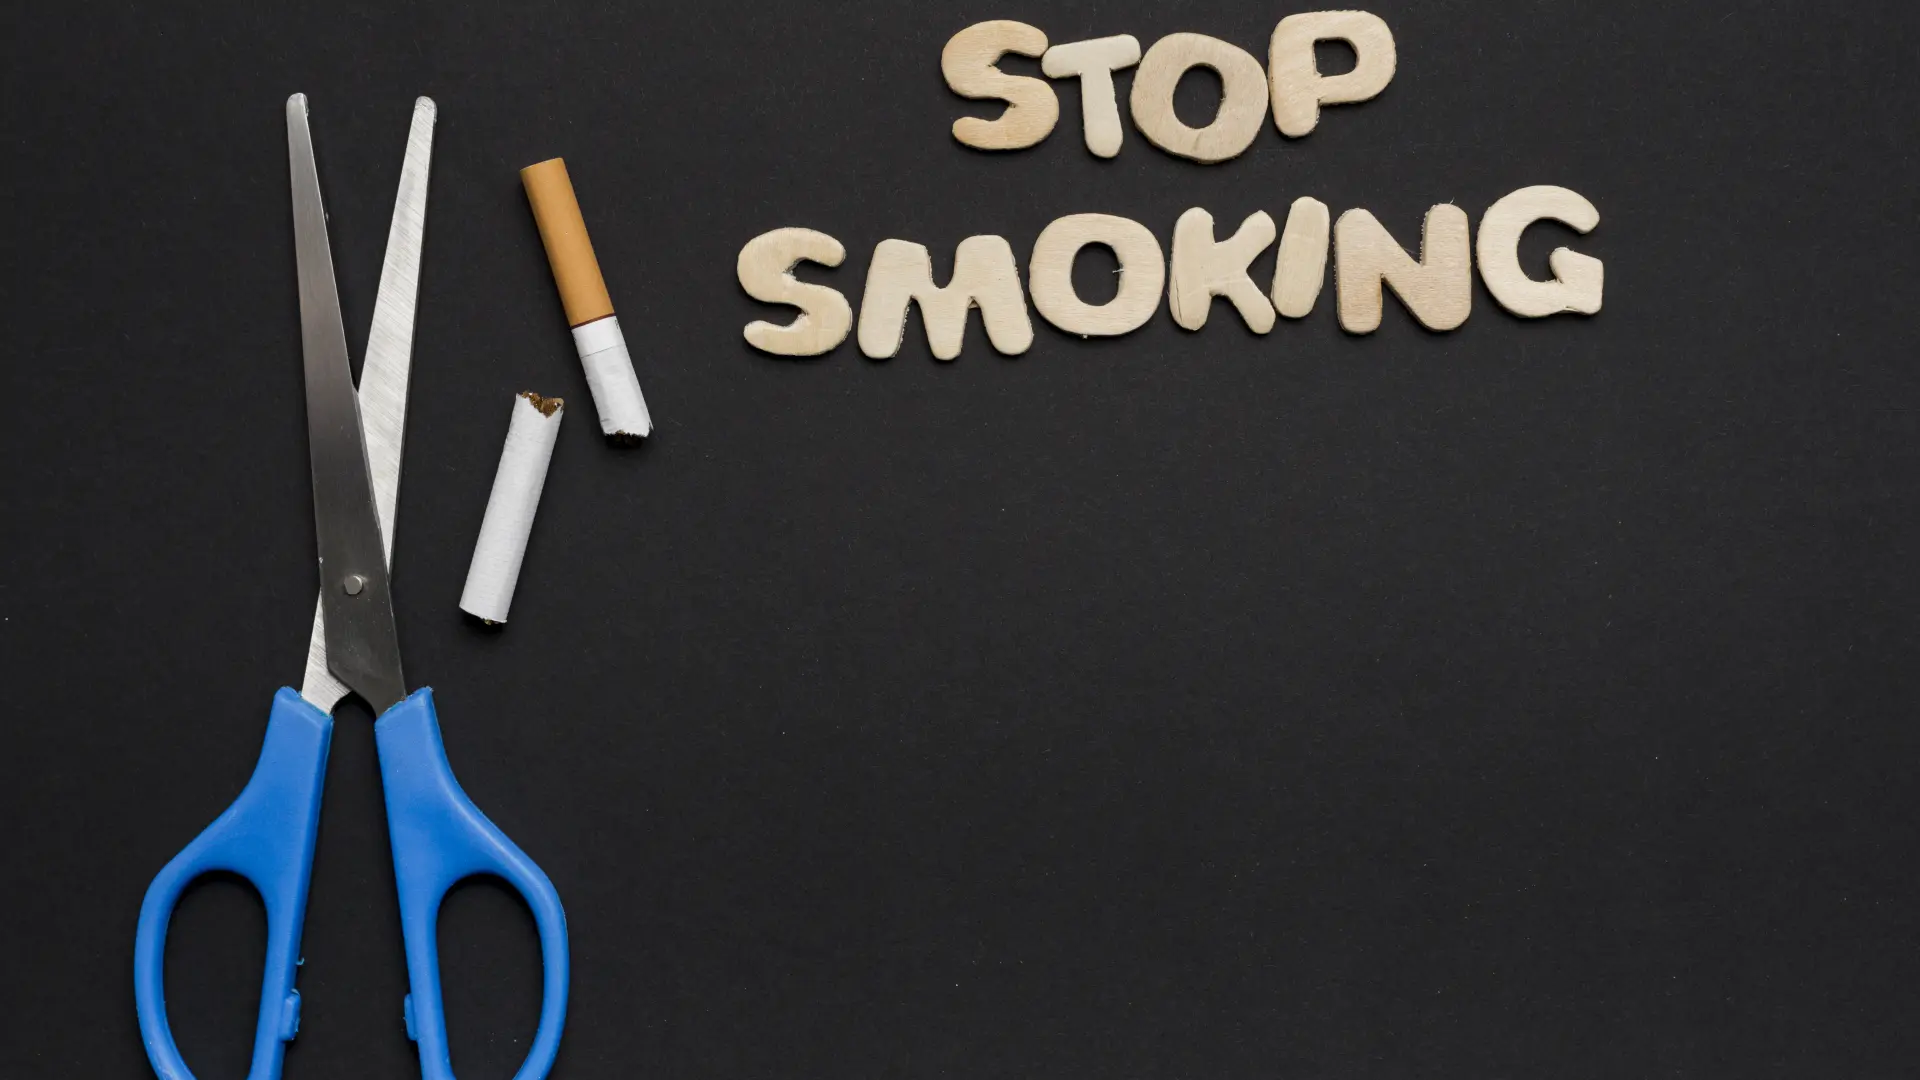 stop-smoking-text-with-scissor-broken-cigarette-black-backdrop-66290b99bfac1.webp